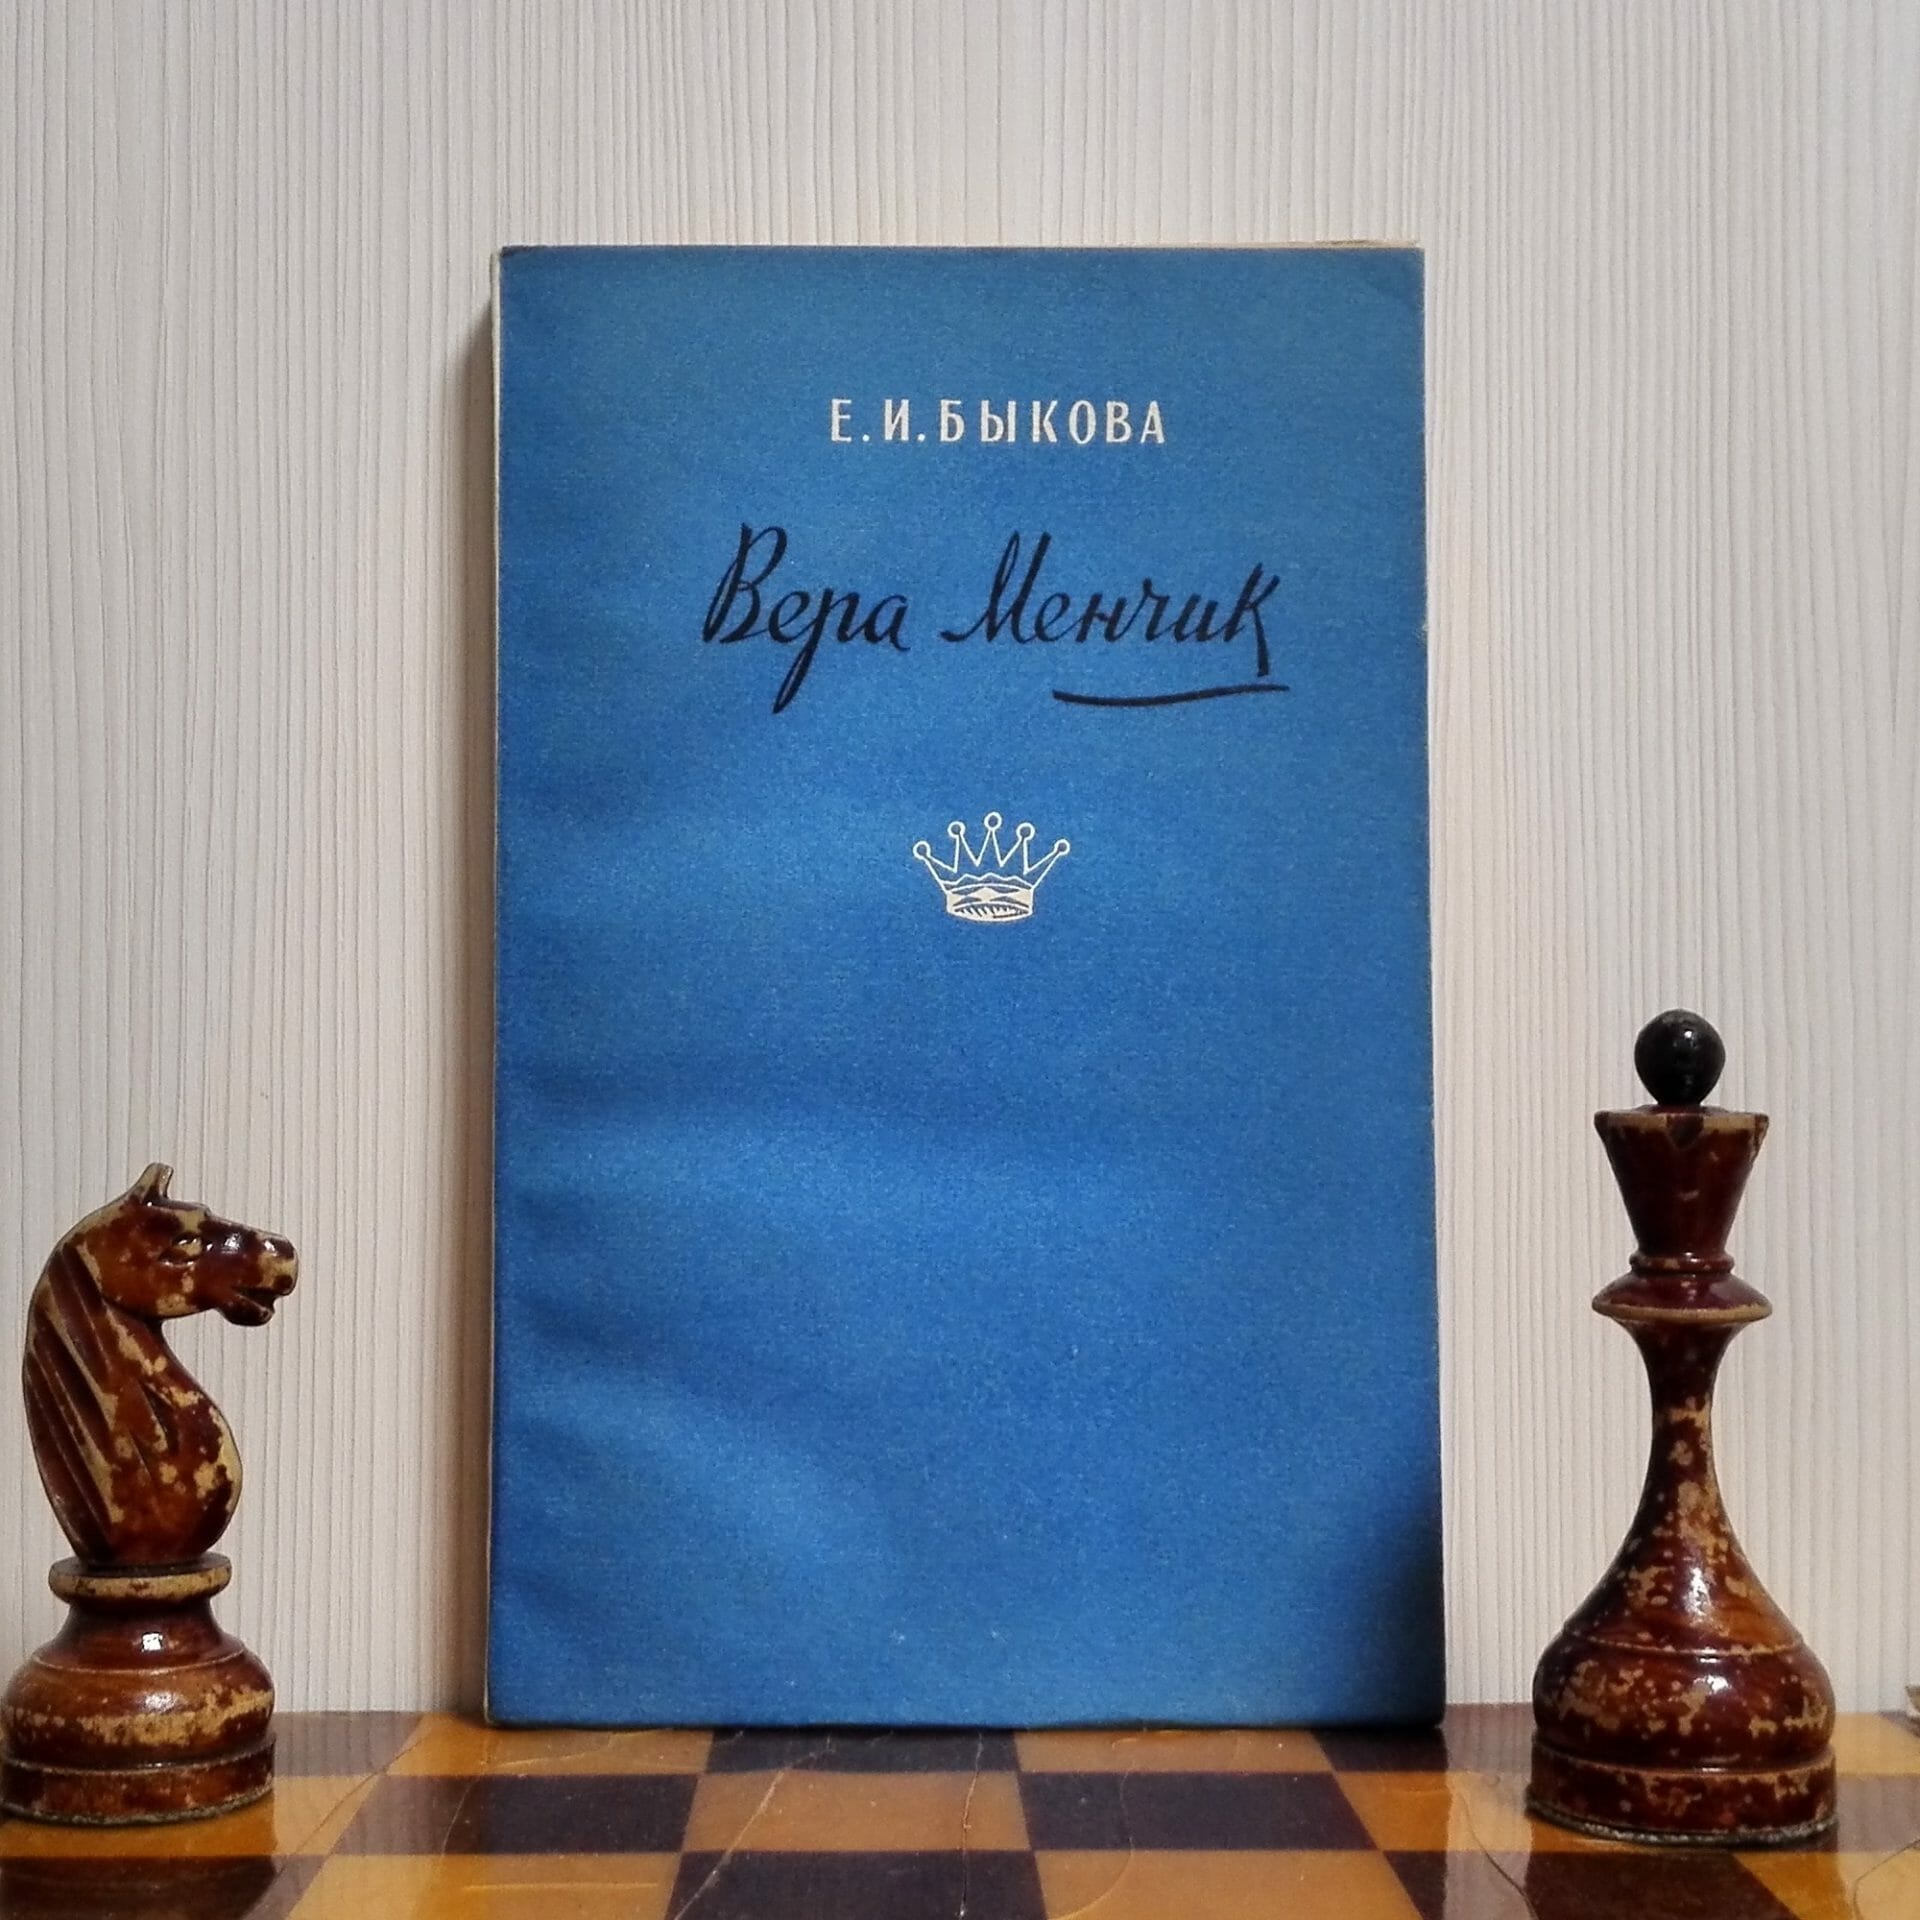 chess player vera menchik